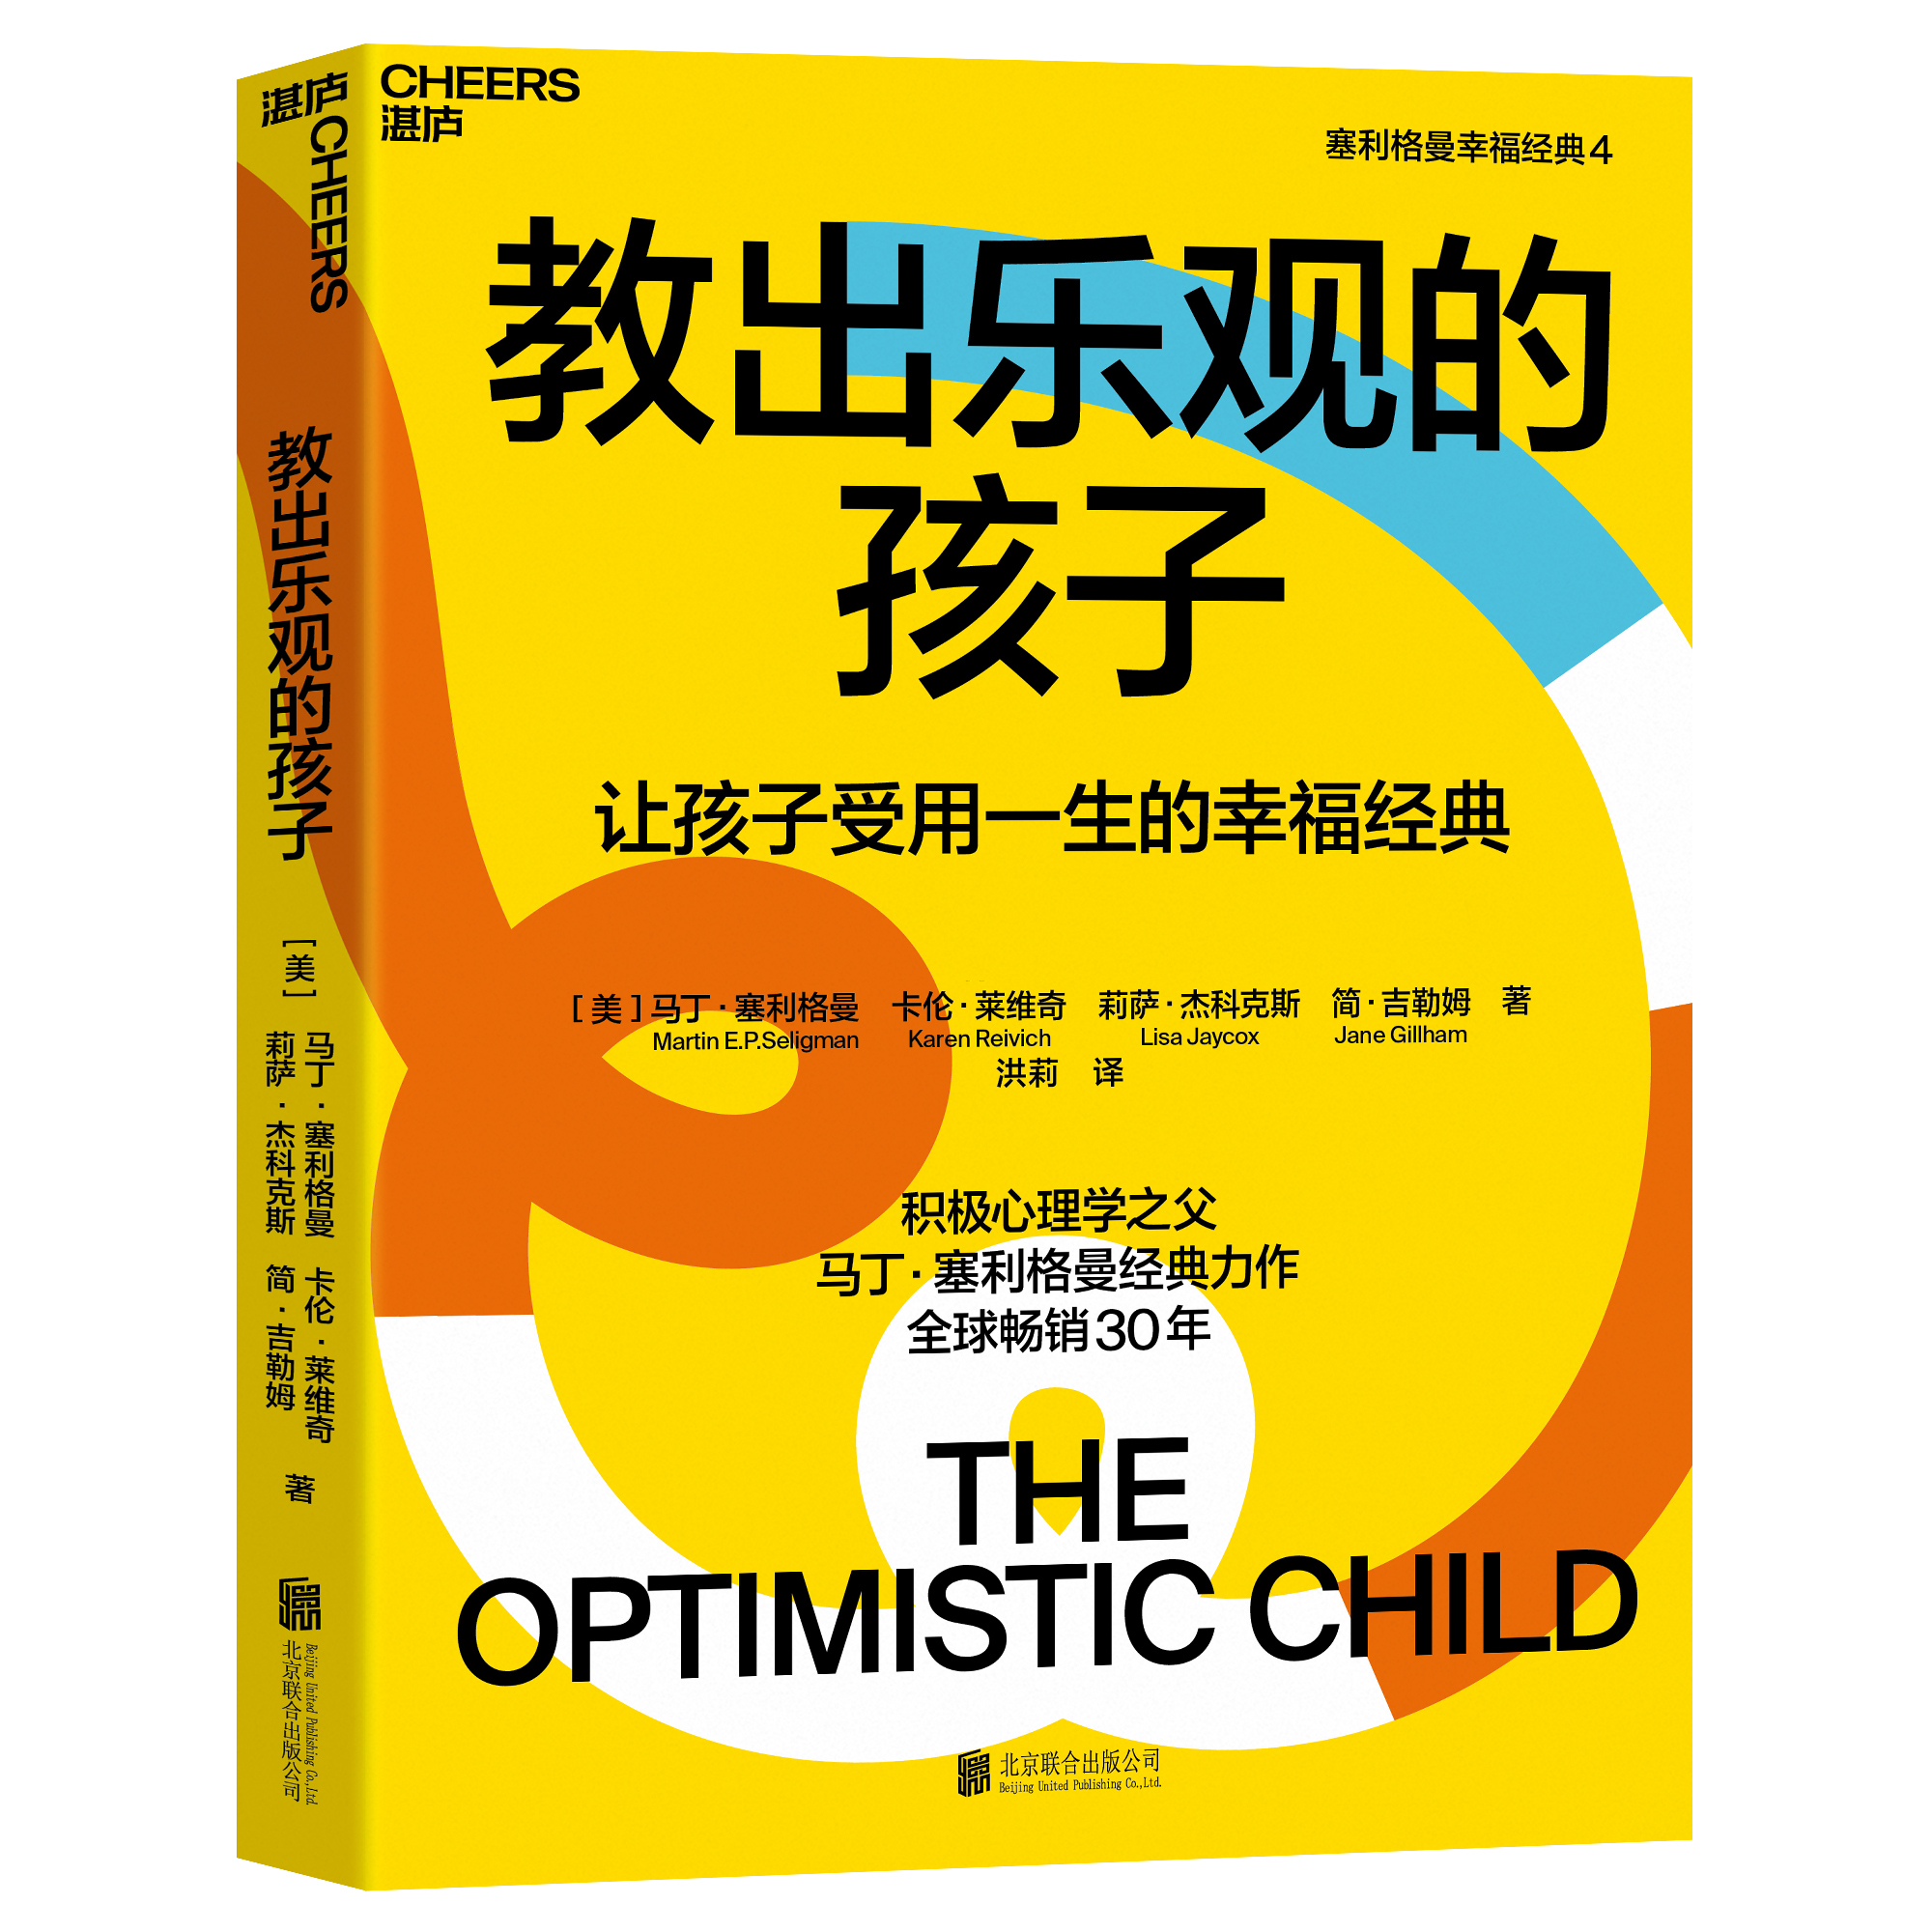 湛庐┃教出乐观的孩子 珍藏版 让孩子受用一生的幸福经典  科学教养教育育儿书籍